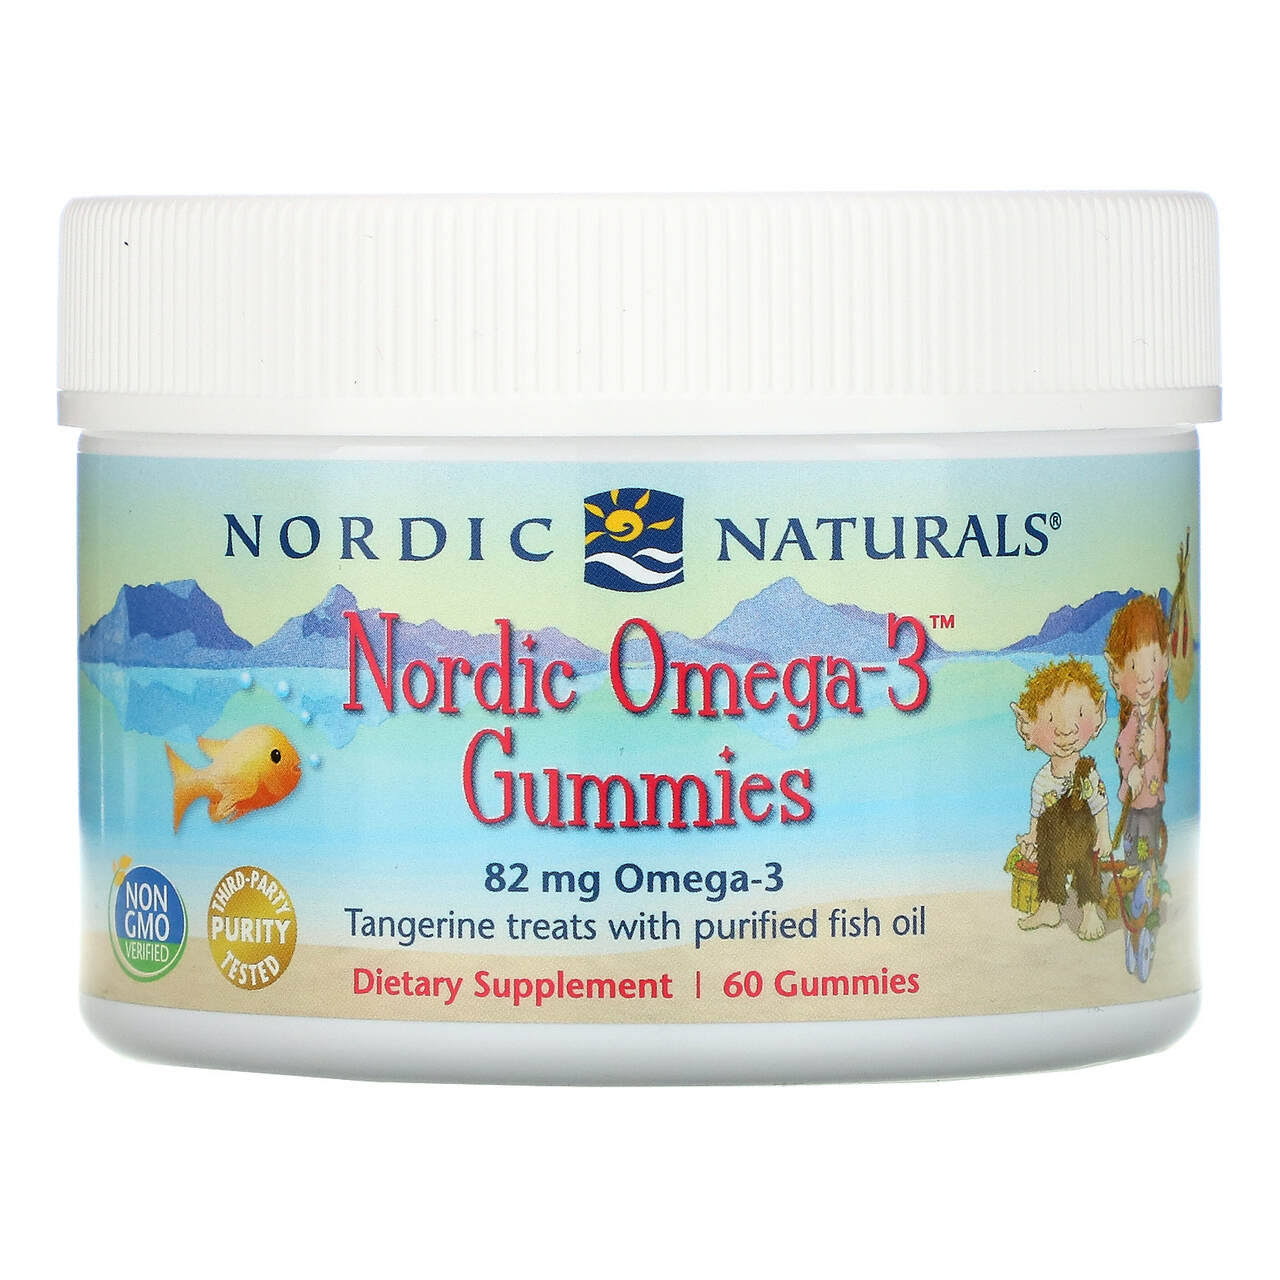 Nordic Naturals Nordic Omega-3 Gummies - Tangerine - 60 Gummies